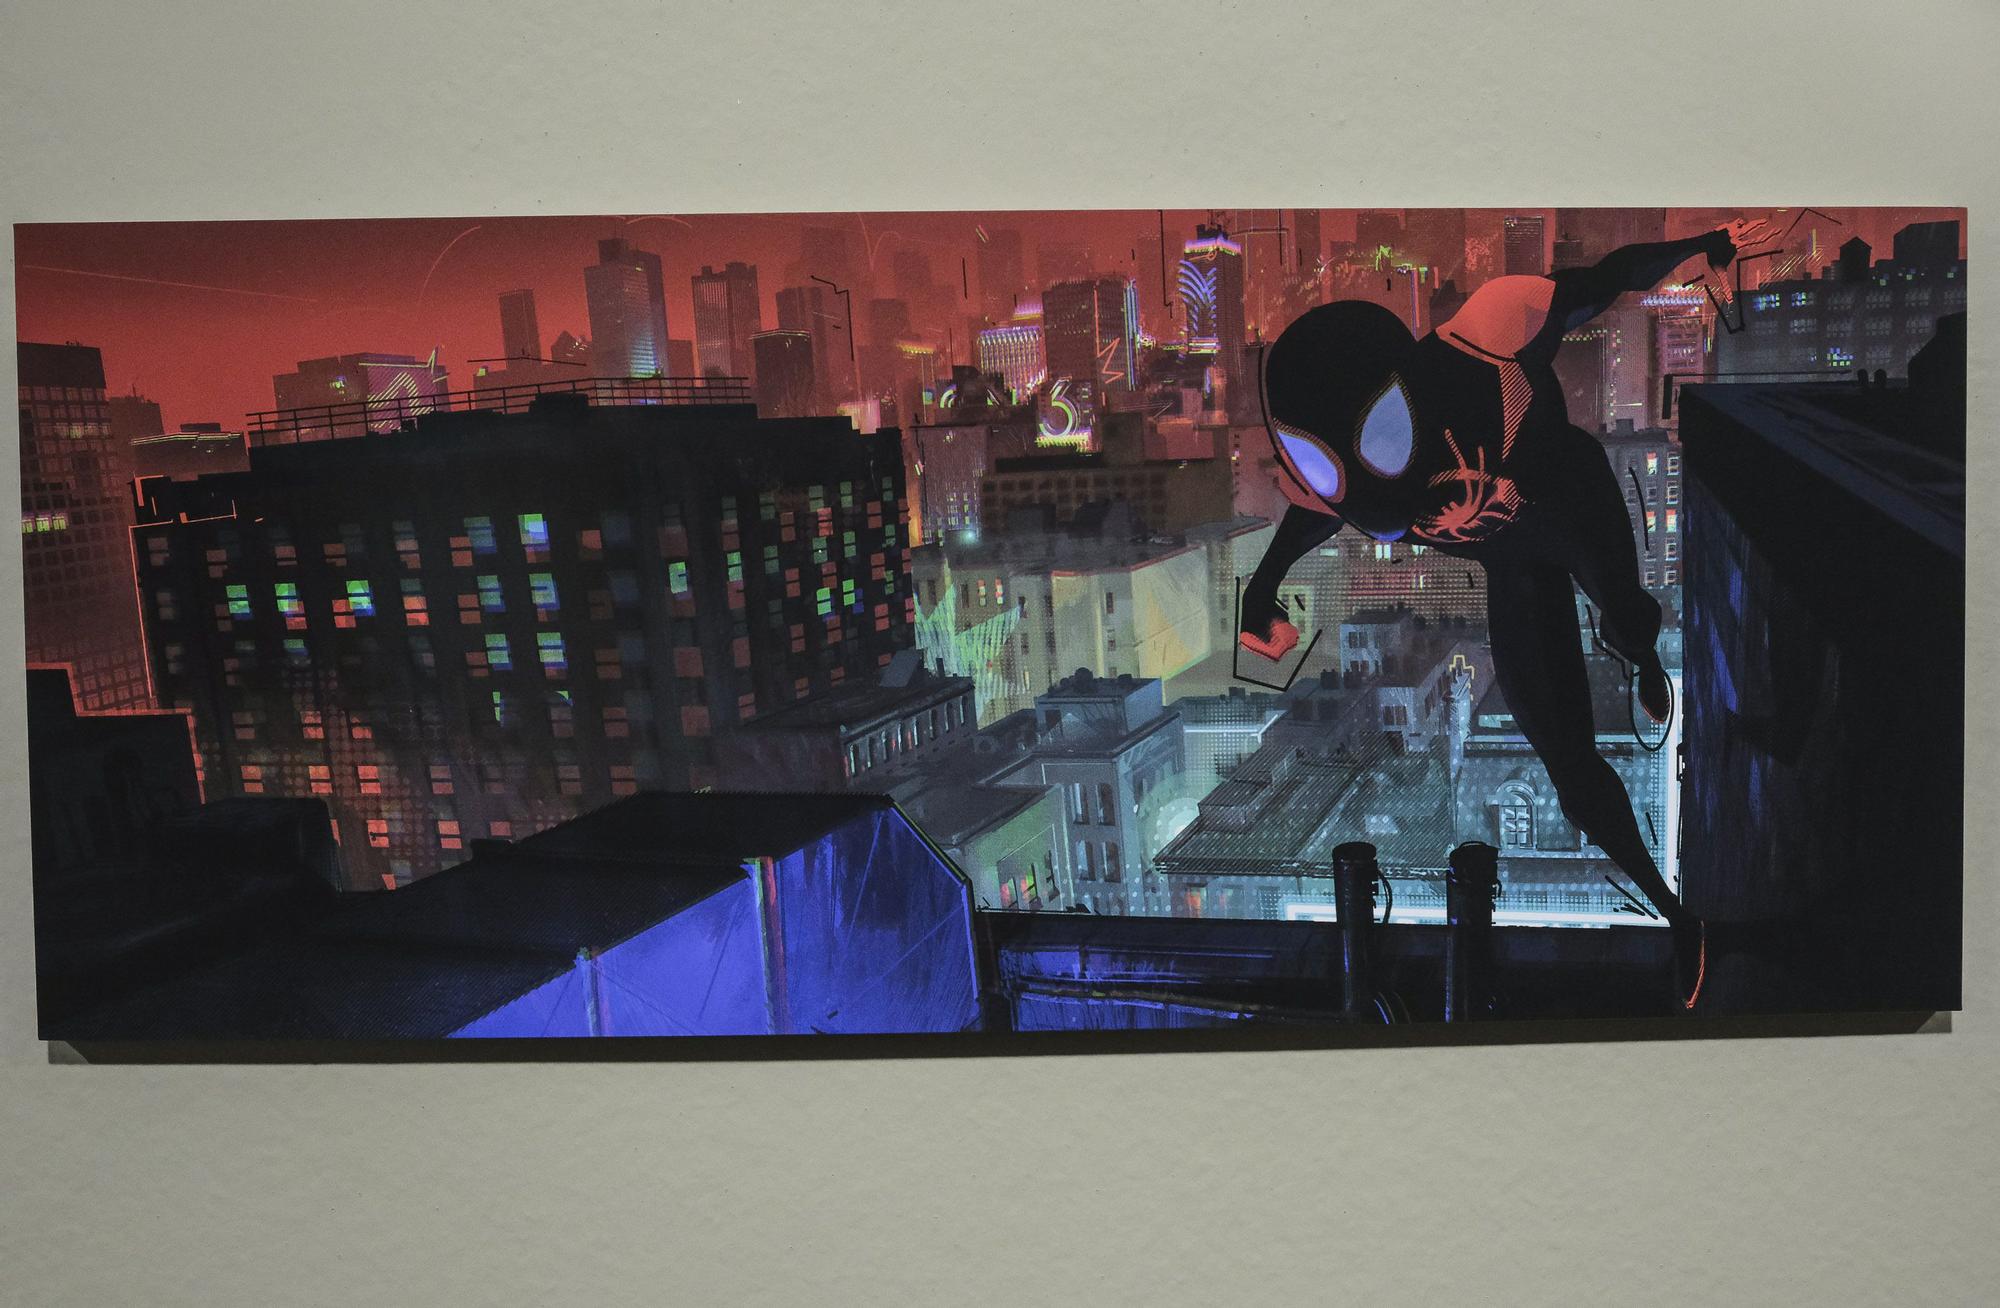 Exposición 'Behind the scenes’ de 'Spider-Man: Across the Spider-Verse', en Animayo 2024.